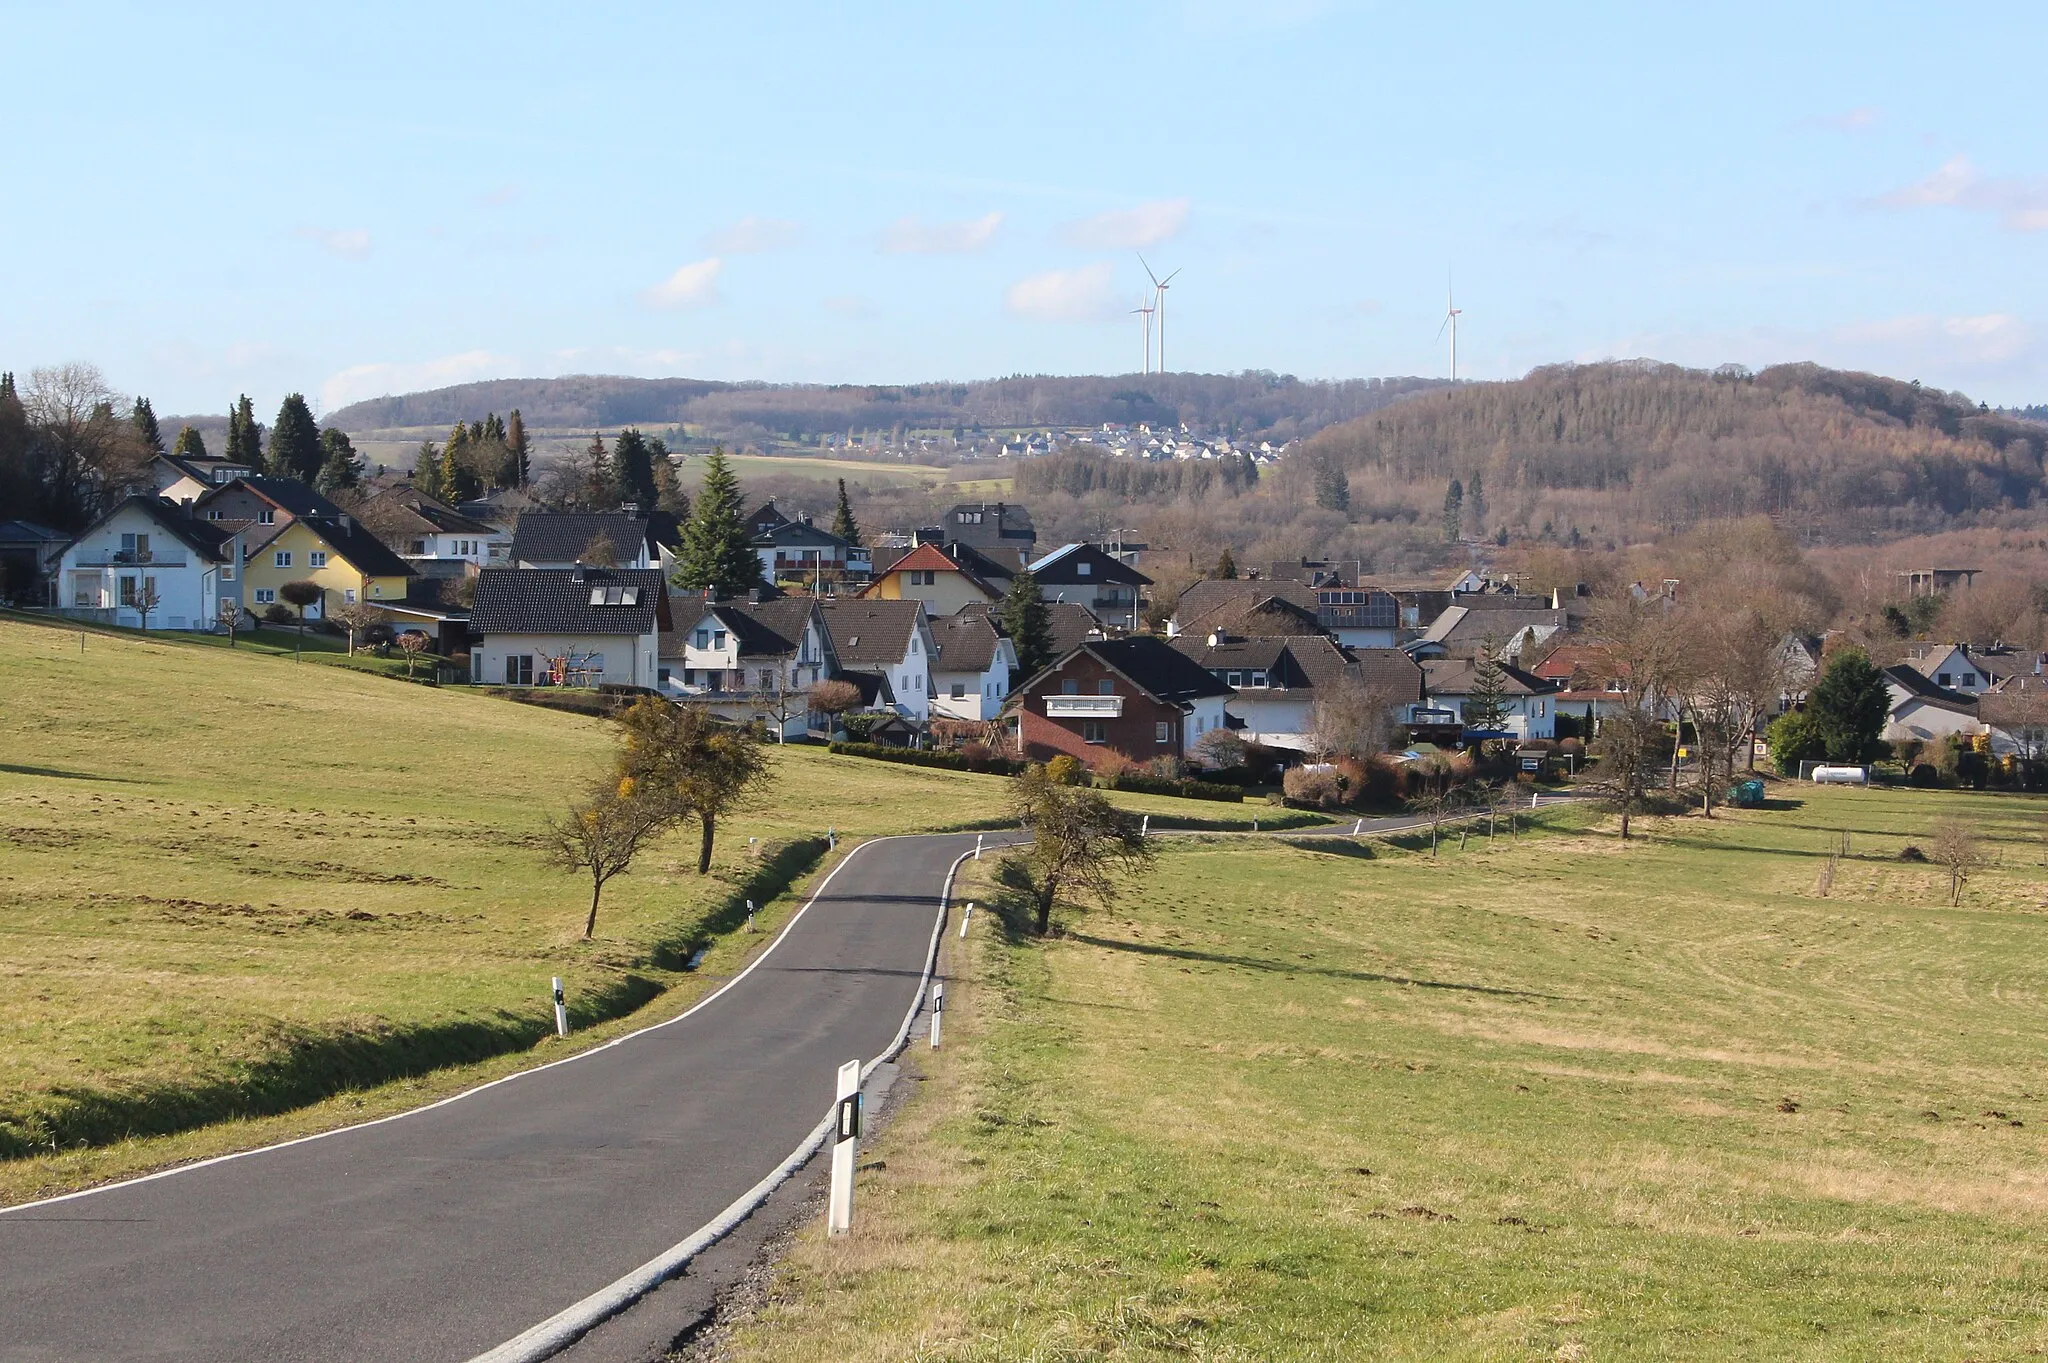 Photo showing: Berzhahn, Gemeinde im Westerwald, Rheinland-Pfalz